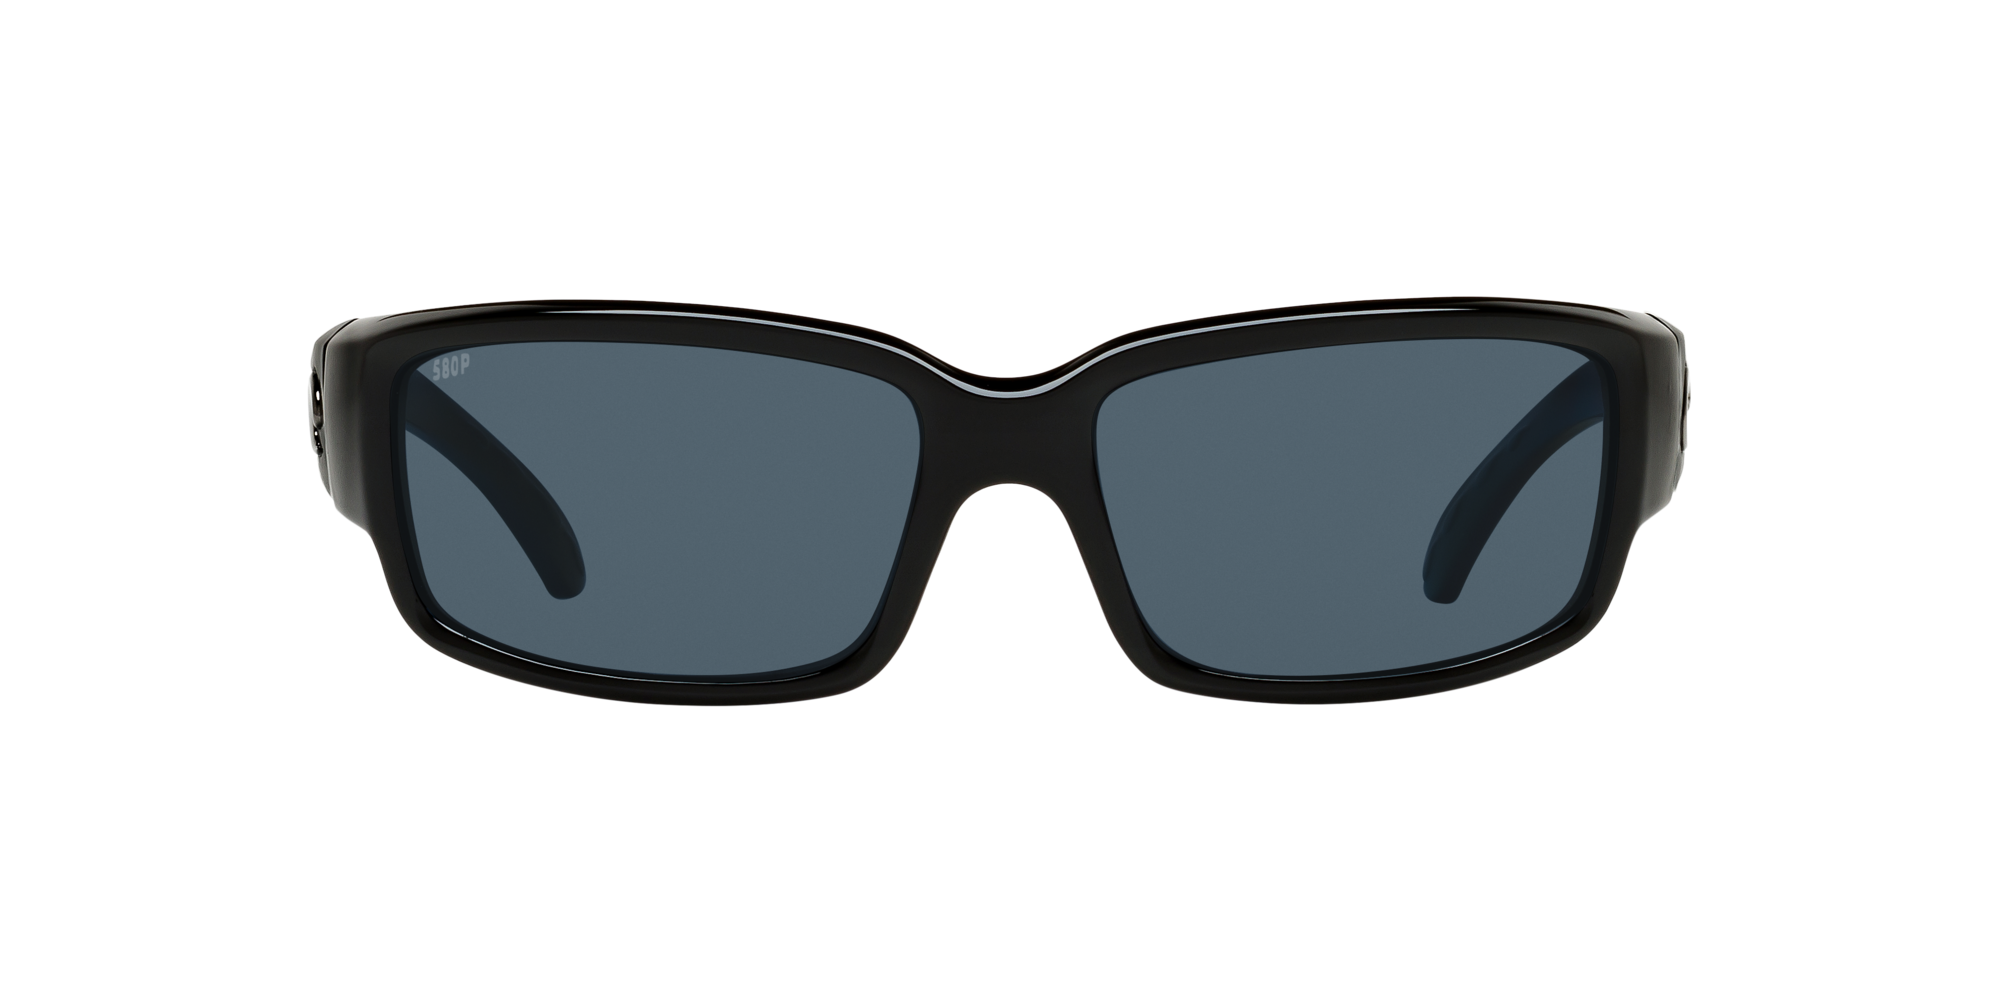 Caballito Polarized Sunglasses in Gray | Costa Del Mar®